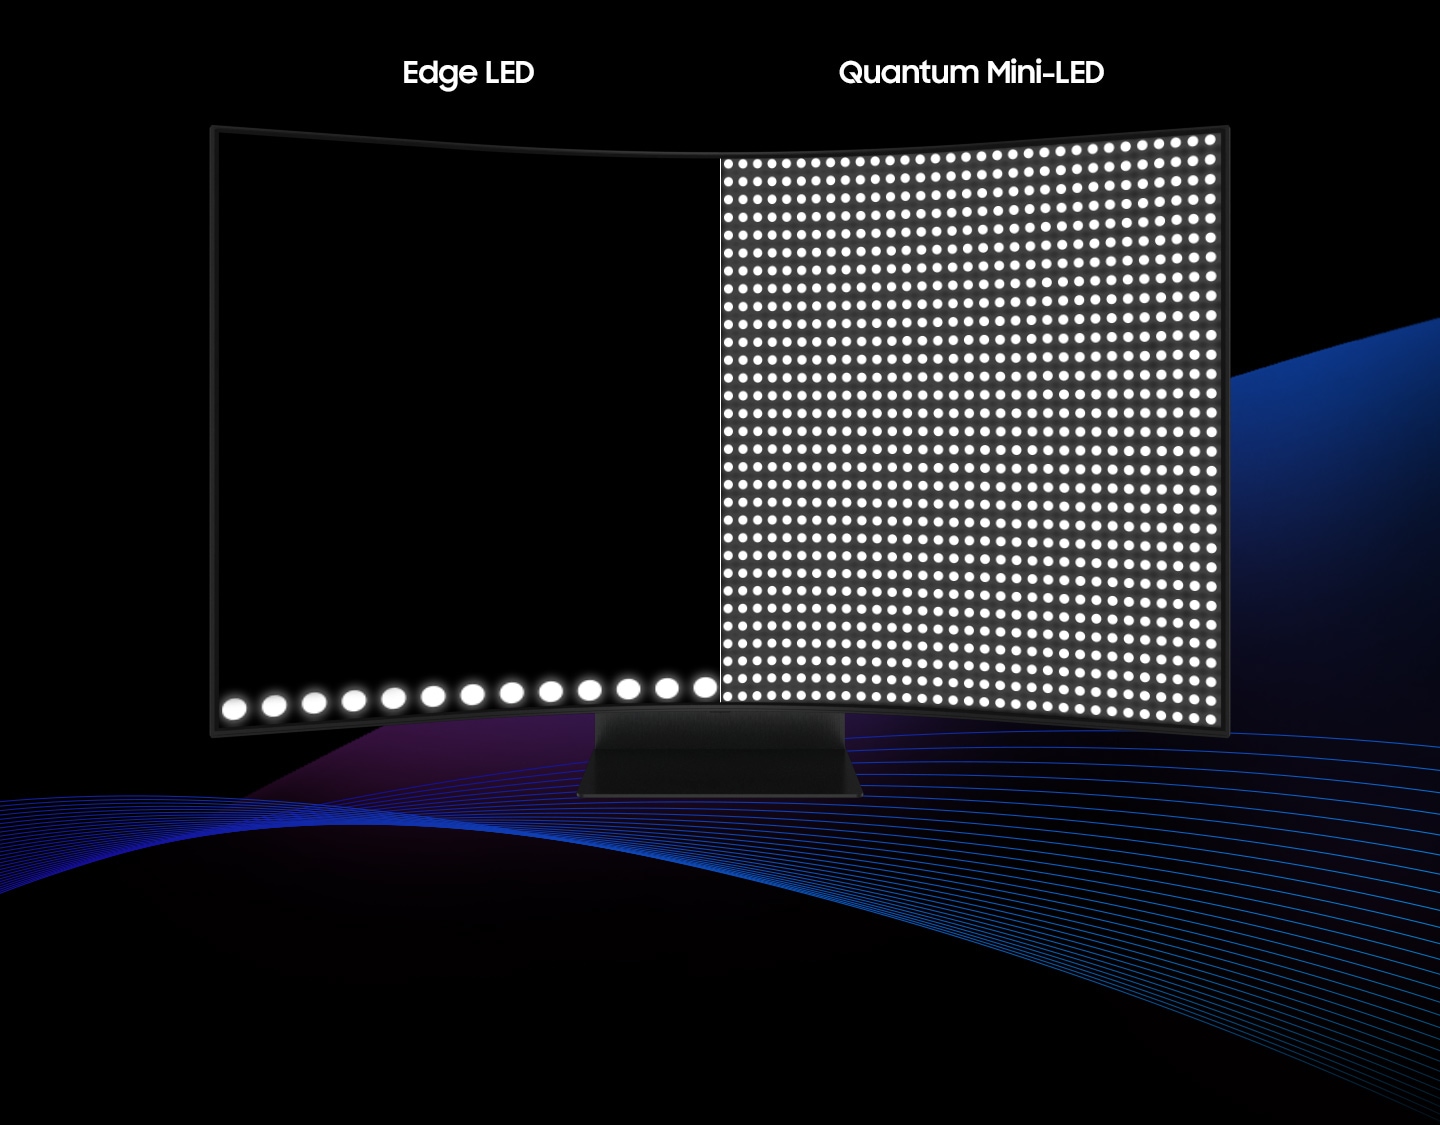 Zaslon monitorja je razdeljen na dva dela. Nad levo stranjo piše "Edge LED", nad desno pa "Quantum Mini-LED". Del Quantum Mini-LED se razširi, zaradi česar je zaslon svetlejši, ko monitor obrnete v levo